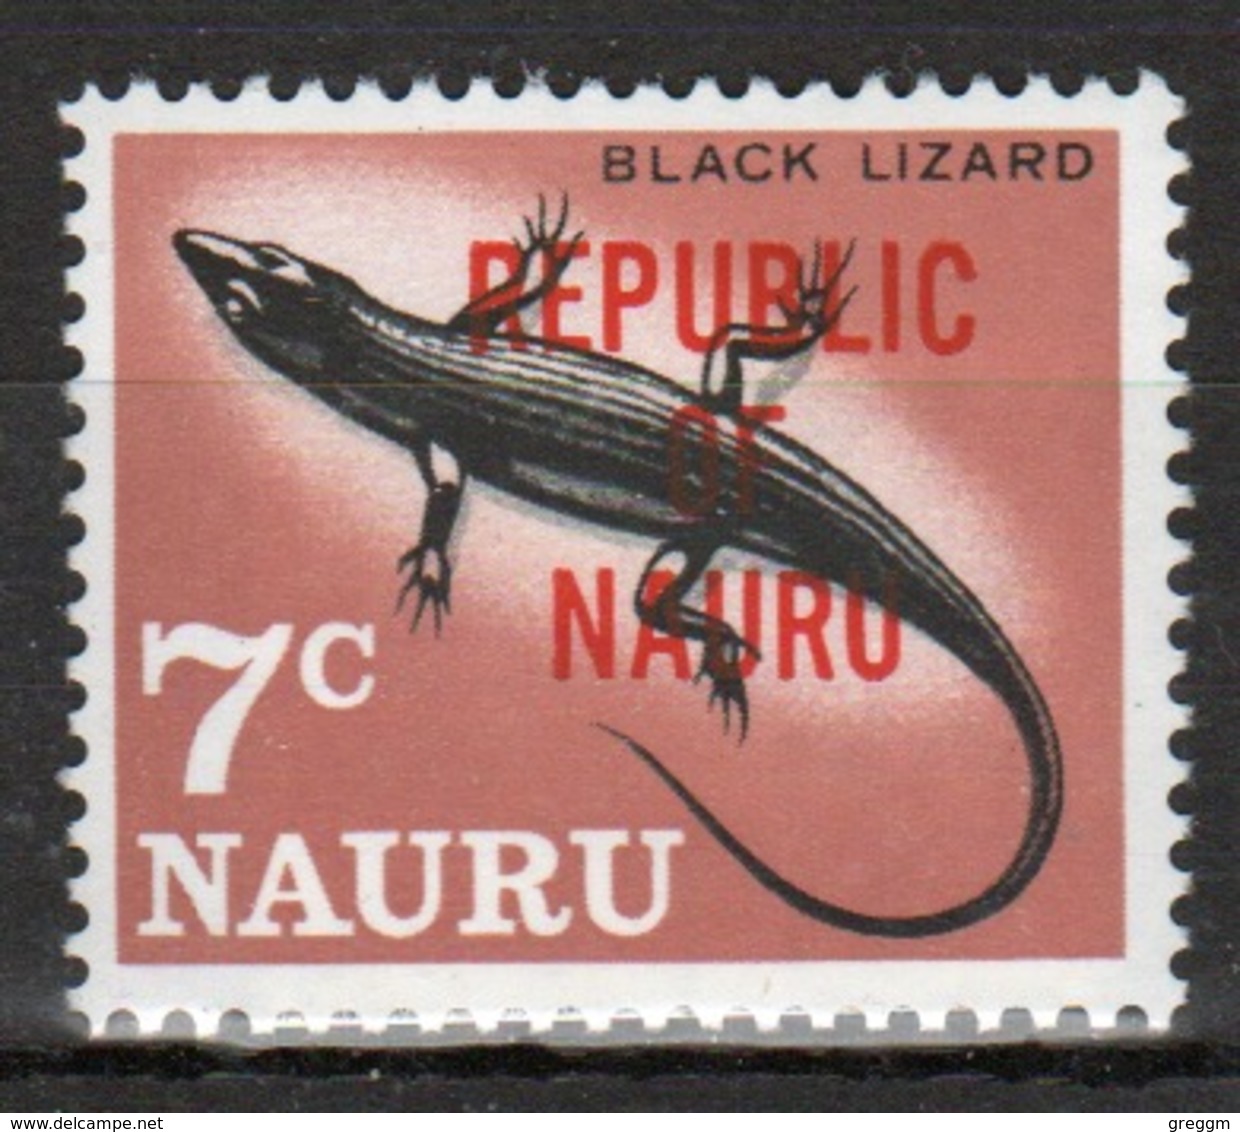 Nauru Single 7c Stamp From 1968 Definitive Set Overprinted Republic Of Nauru. - Nauru